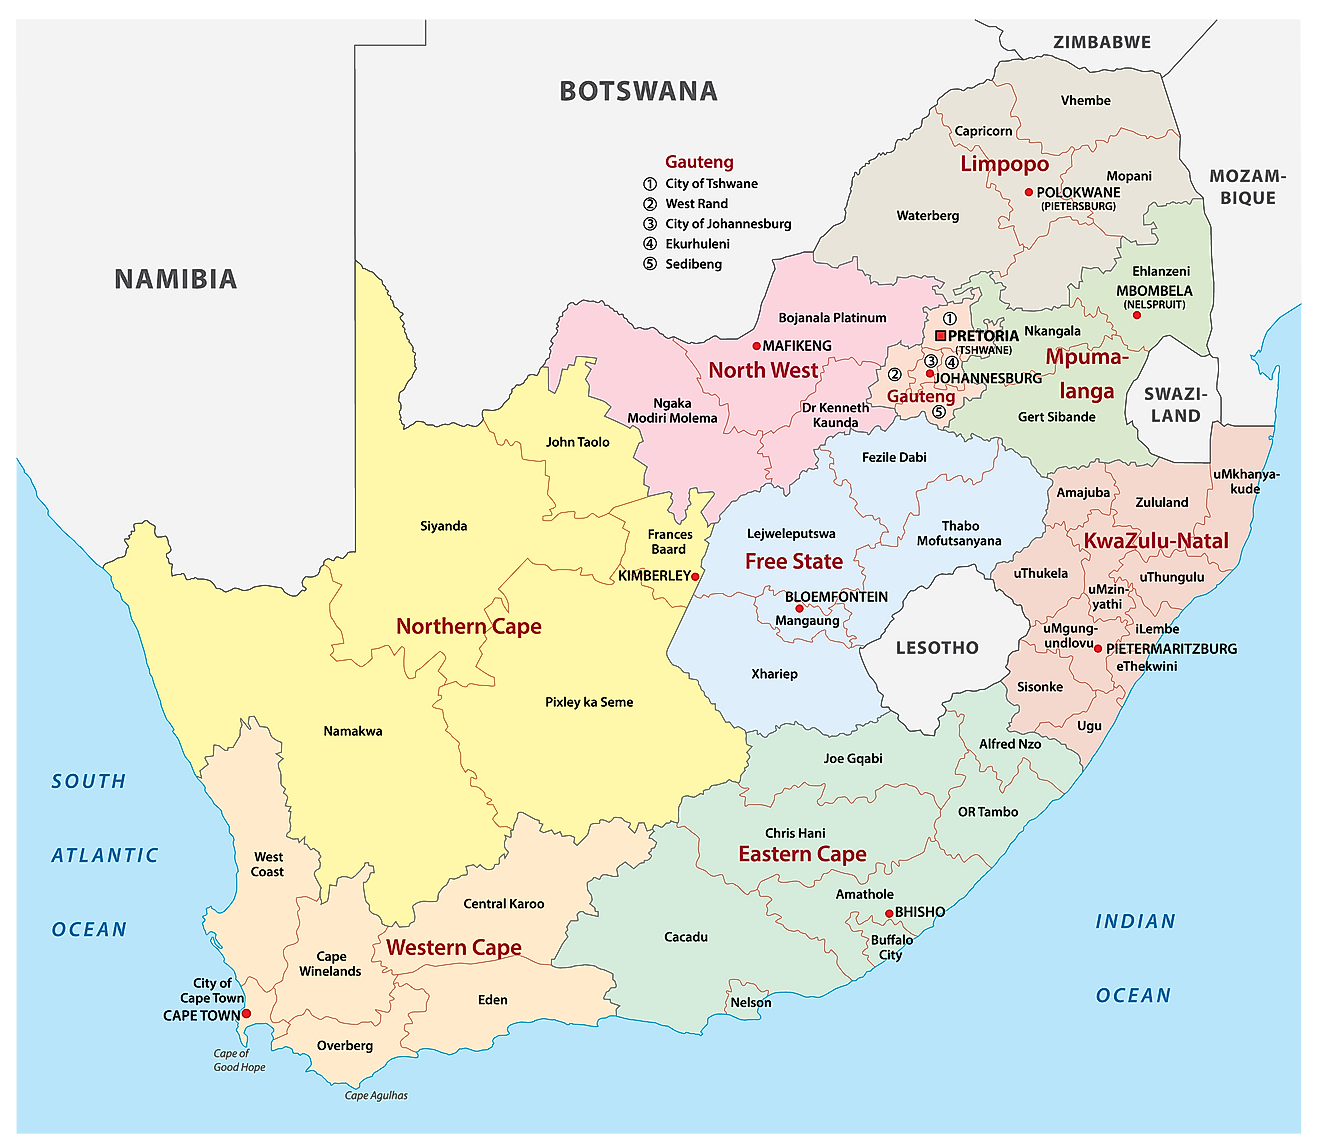 Mapa político de Sudáfrica que muestra las nueve provincias y sus capitales, y las tres capitales del país.